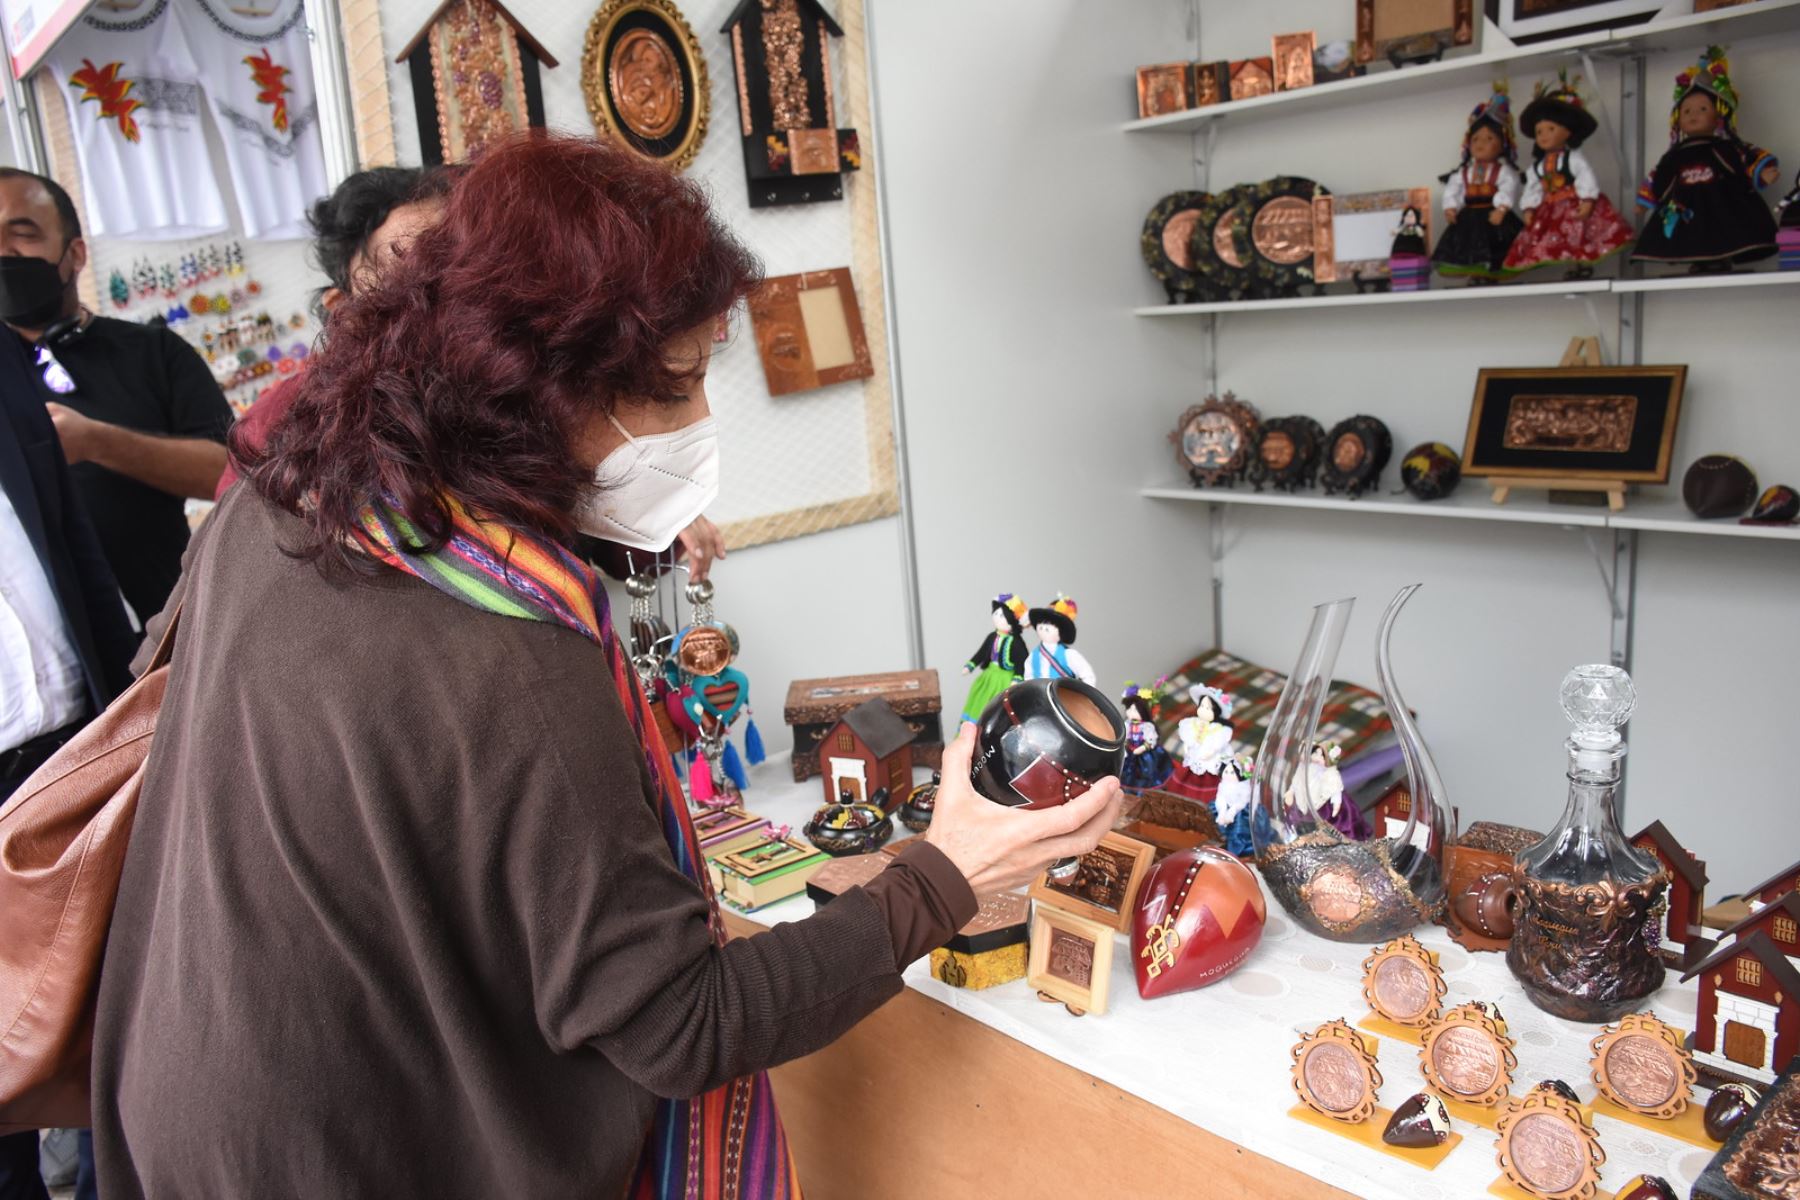 Se inauguró la Feria Nacional de Artesanía "De Nuestras Manos". La viceministra de Turismo de Mincetur, Isabel Álvarez inauguró la feria más importante del año que congrega a destacados artesanos a nivel nacional, incluidos los grandes amautas de la artesanía del Perú. Foto: Mincetur